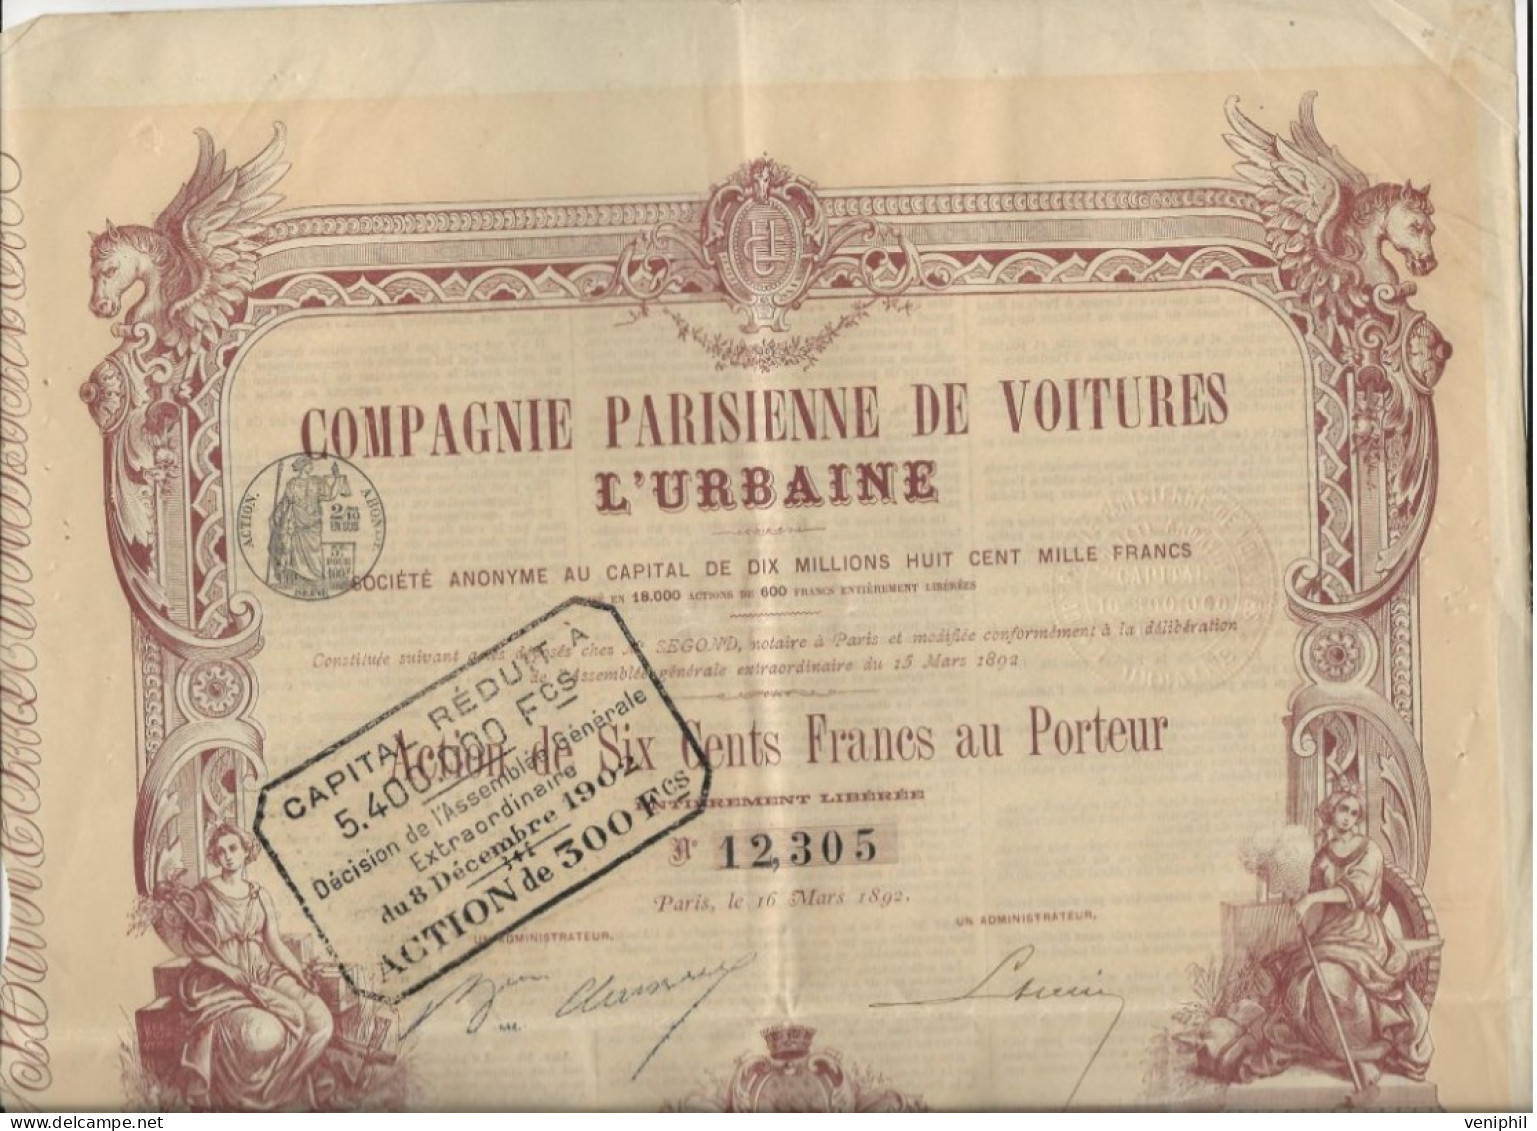 COMPAGNIE PARISIENNE DE VOITURES L- ACTION ILLUSTREE DE SIX CENTS FRANCS - ANNEE 1892 - Cars